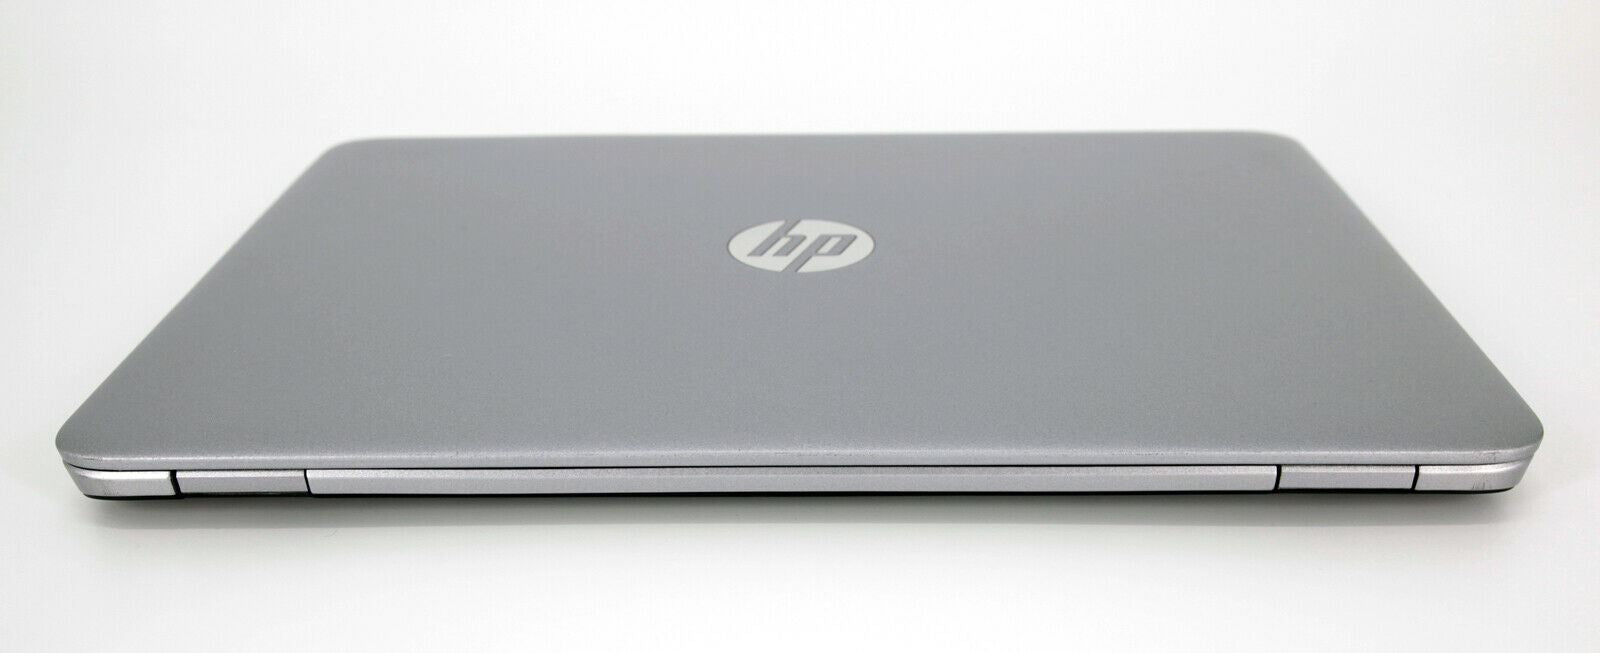 HP EliteBook 840 G3 Laptop: Intel Core i7, 8GB RAM, 256GB SSD, Warranty VAT